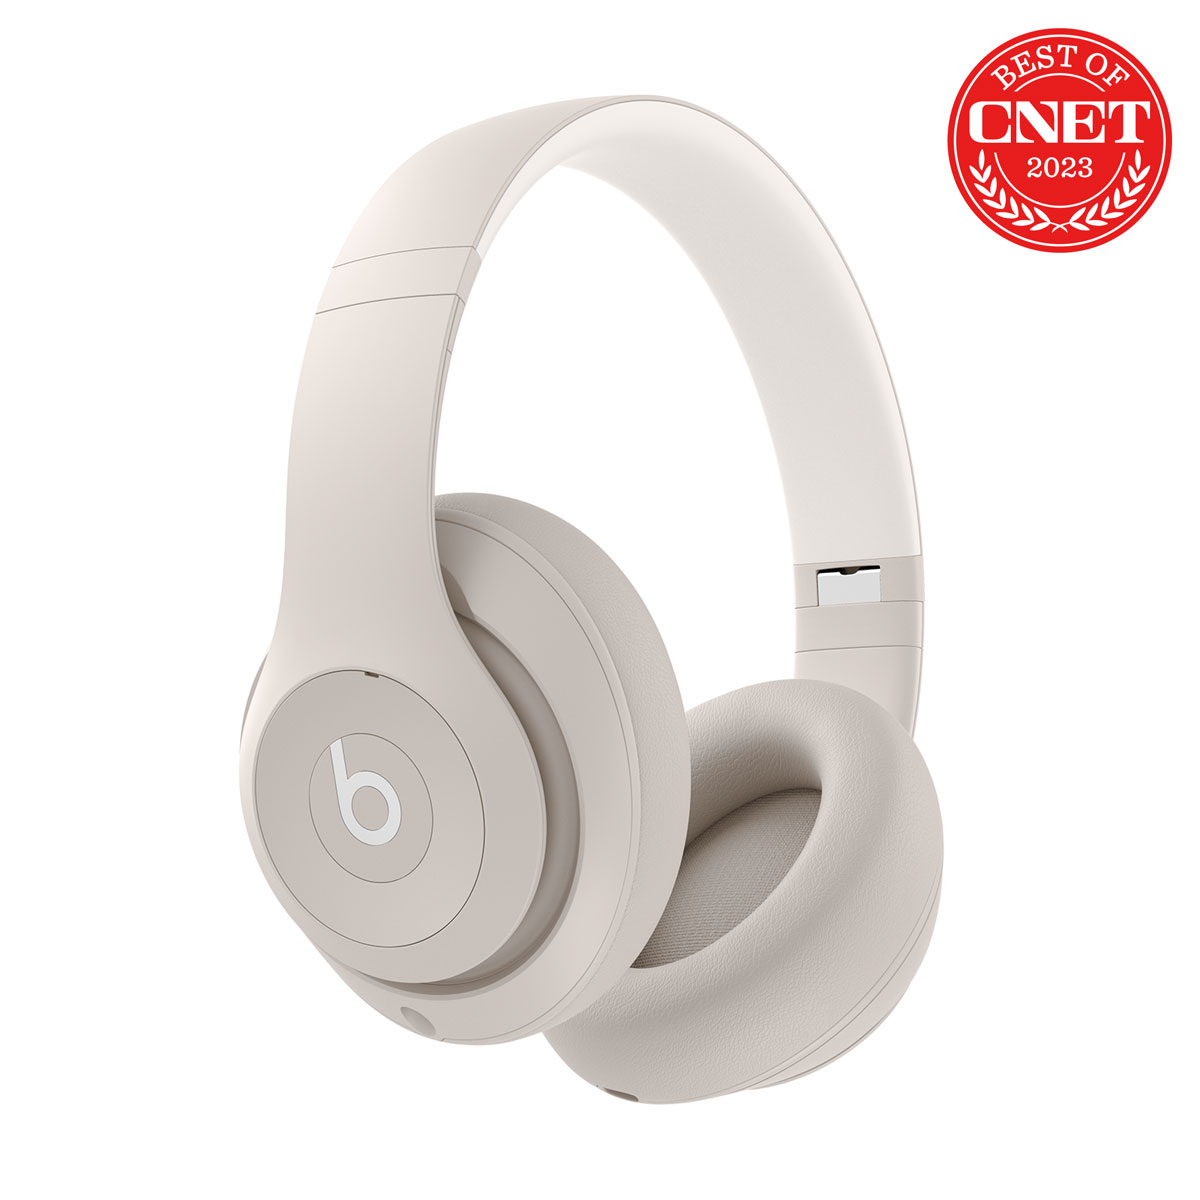 Pro Sandstone Beats - - Cancelling Noise Premium Headphones Wireless Studio